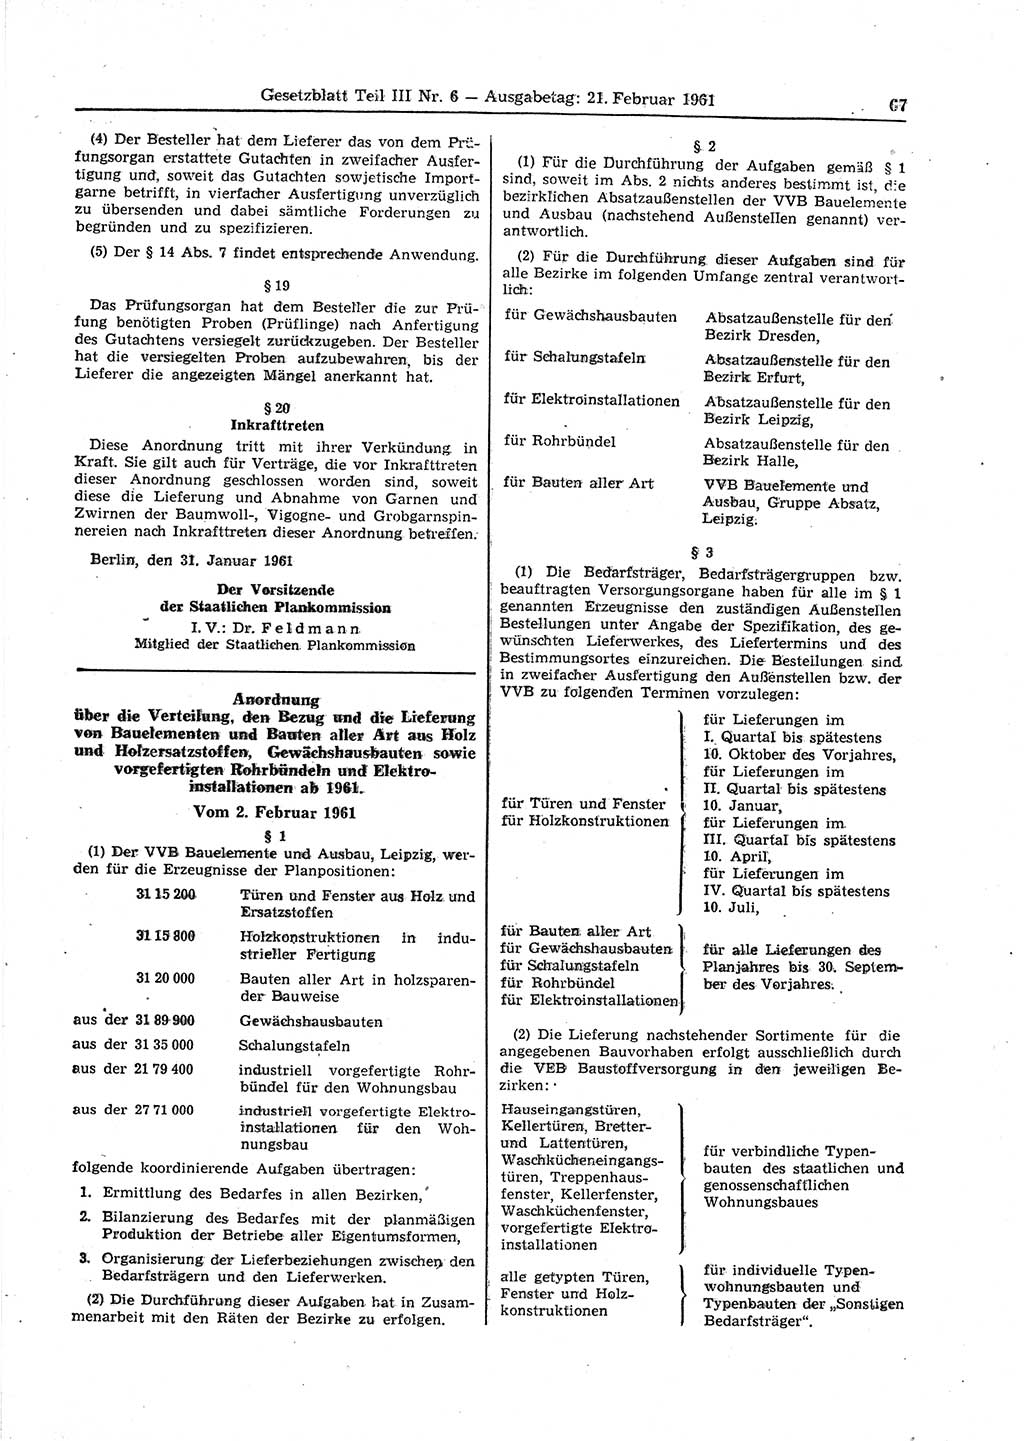 Gesetzblatt (GBl.) der Deutschen Demokratischen Republik (DDR) Teil ⅠⅠⅠ 1961, Seite 67 (GBl. DDR ⅠⅠⅠ 1961, S. 67)